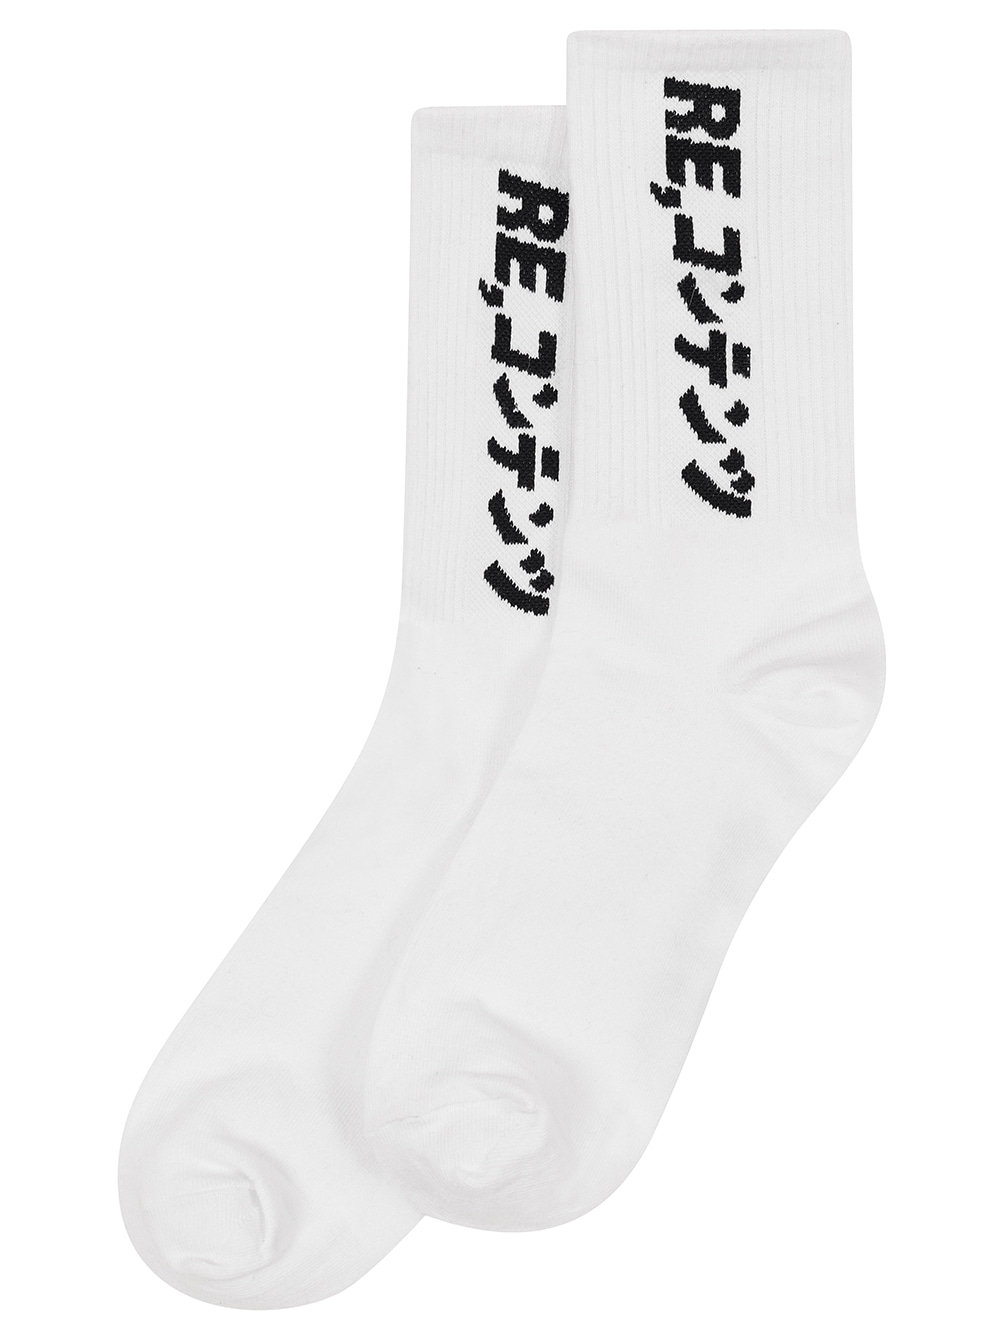 RC basic socks (white)